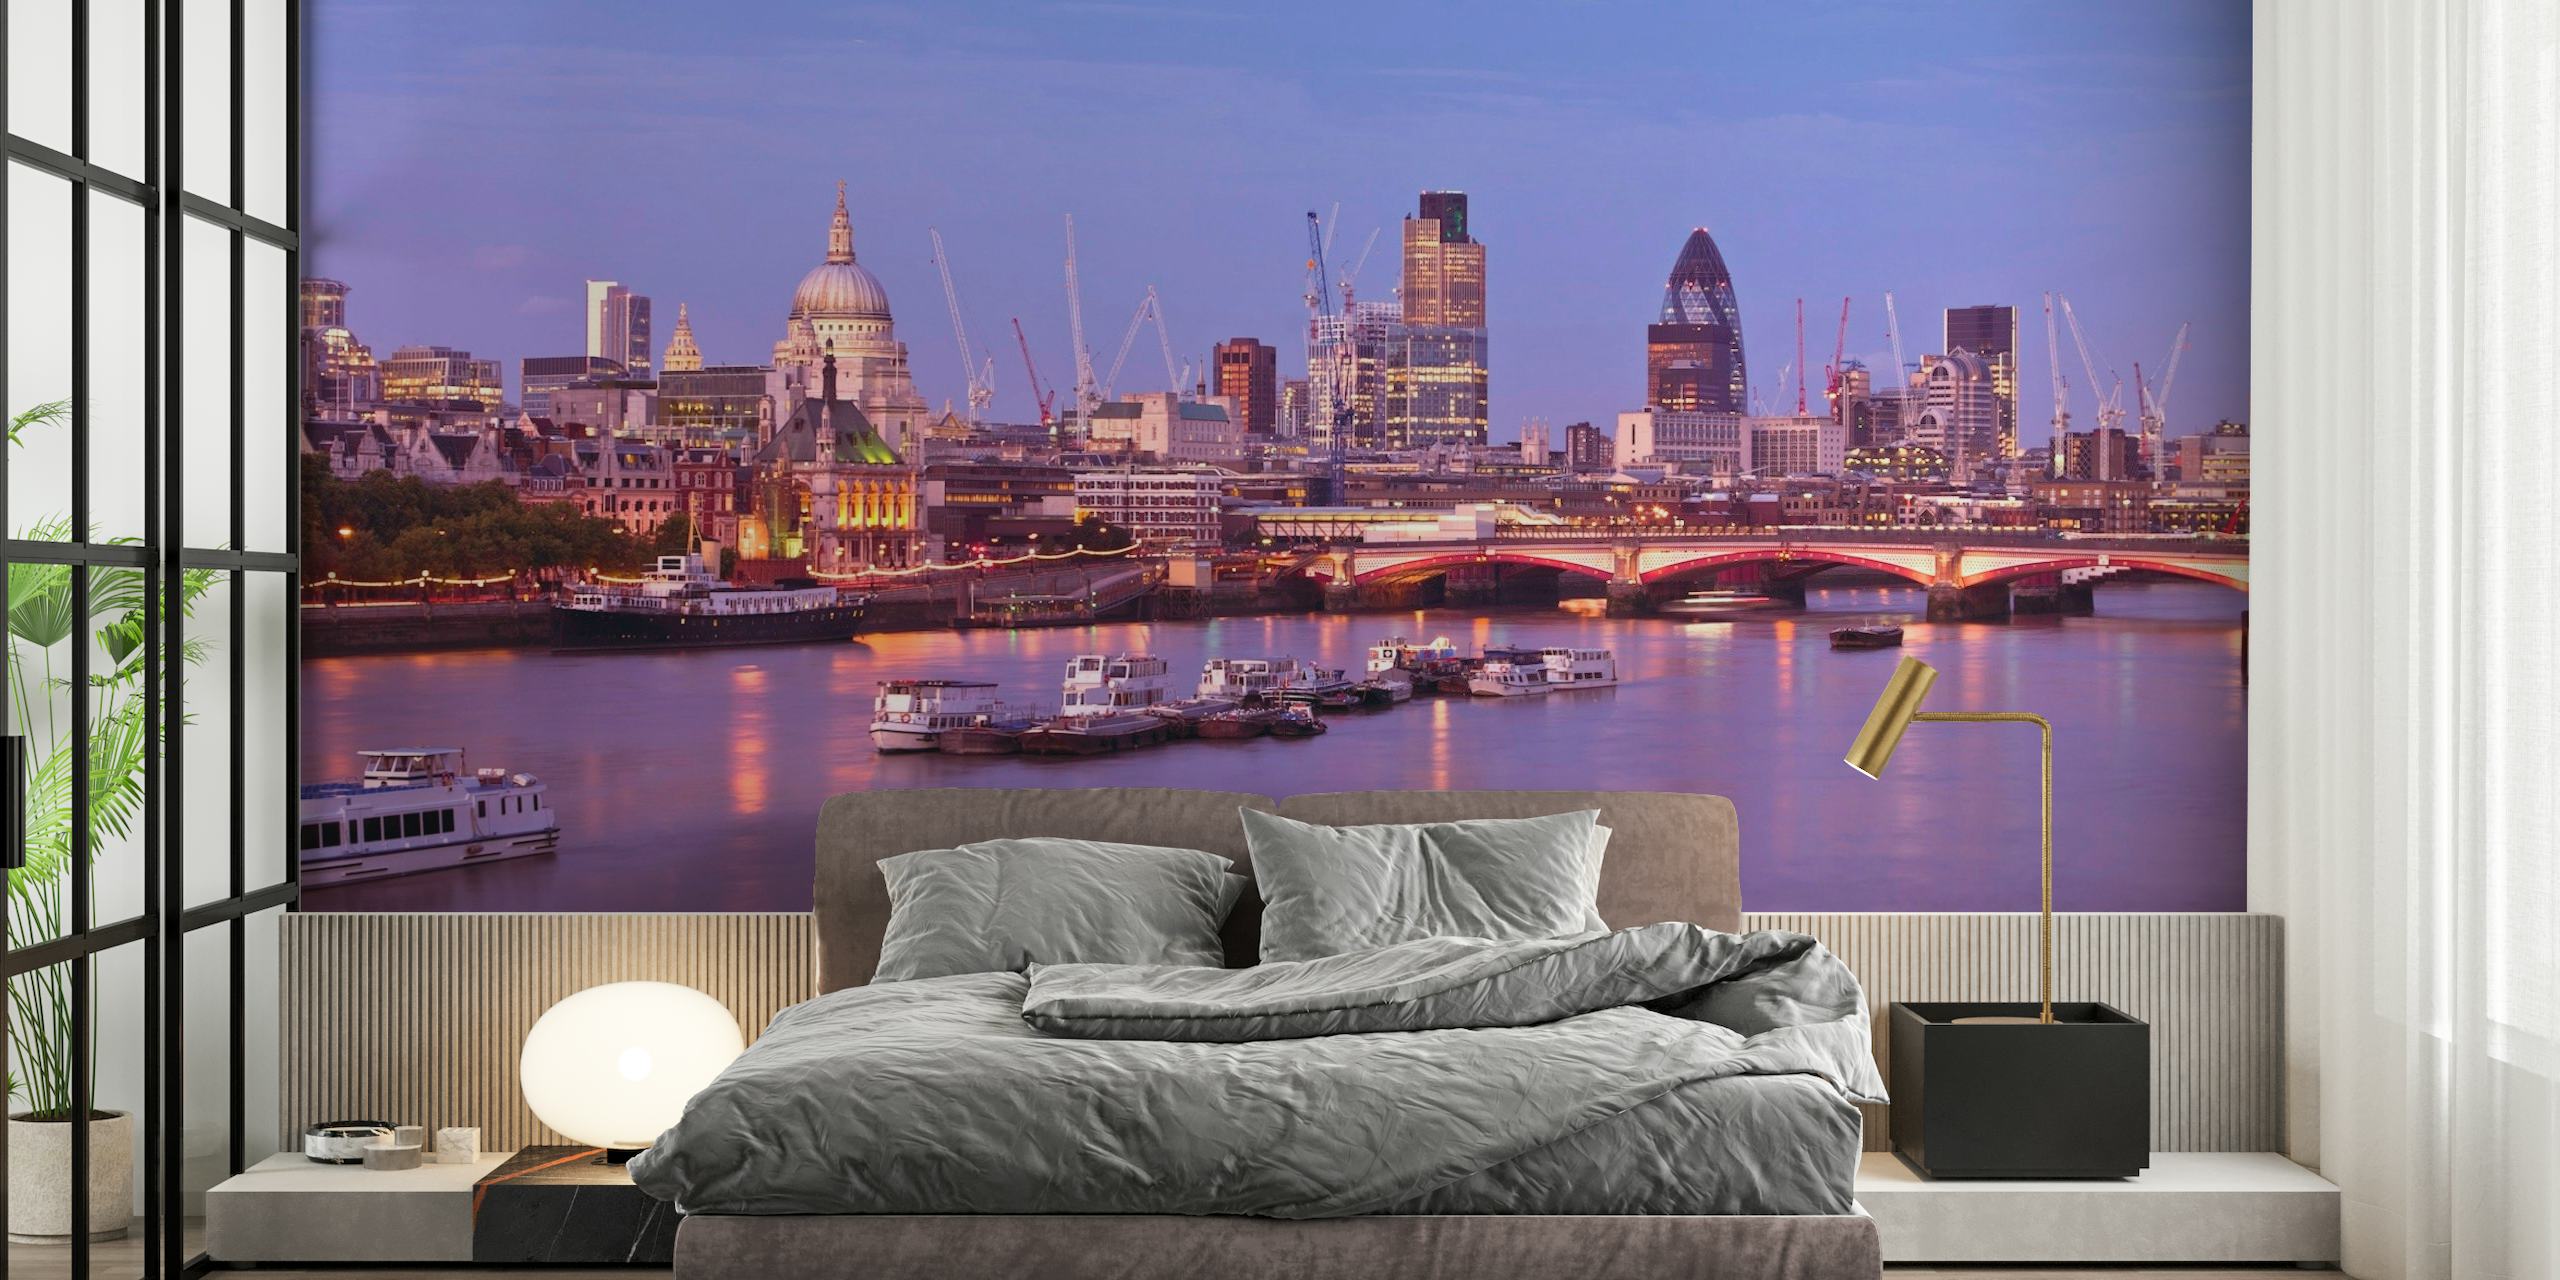 Fototapeta przedstawiająca Tamizę w Londynie o zmierzchu z panoramą miasta